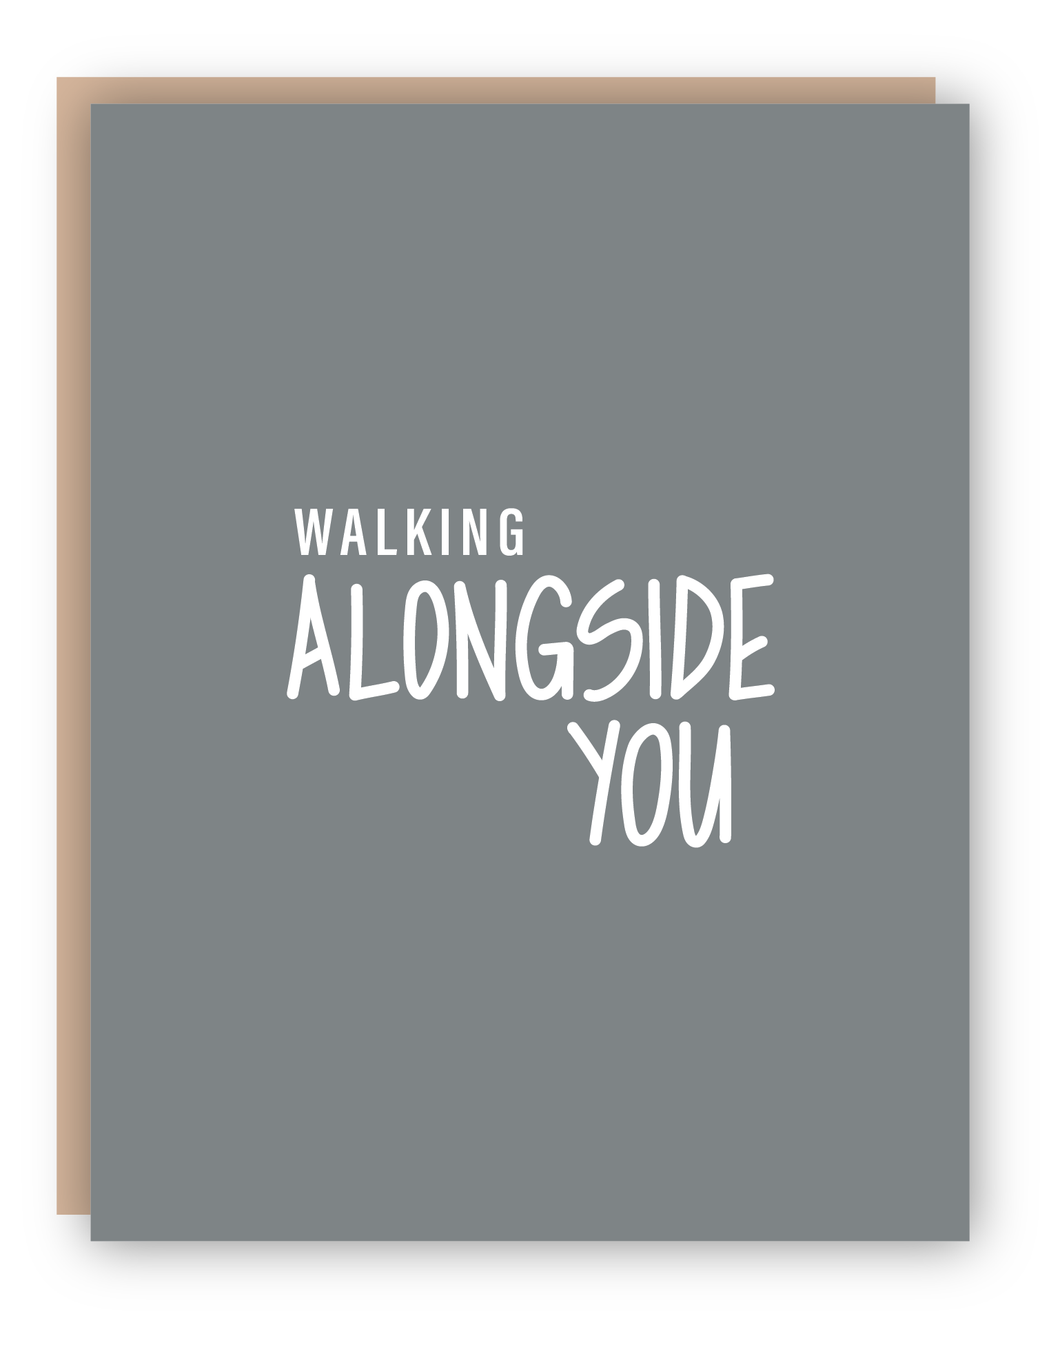 WALKING ALONGSIDE